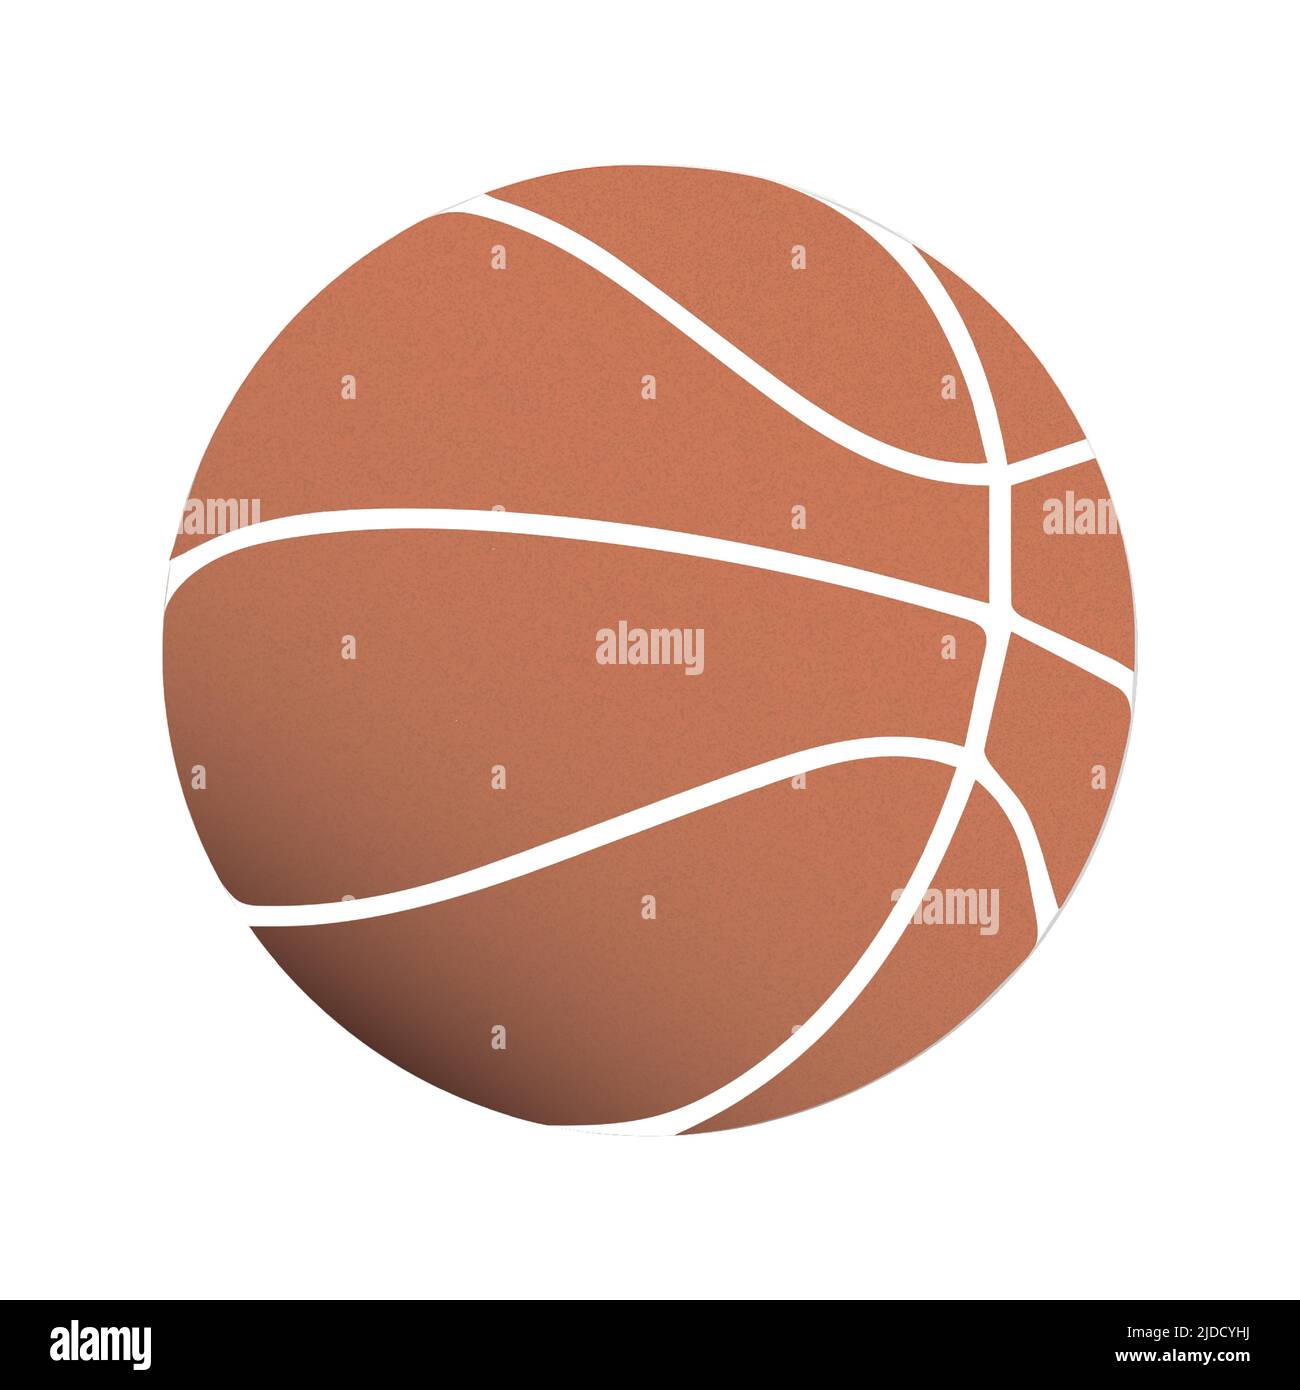 Vektor-Illustration von orange colered realistische Basketball Cliparts Zeichnung. Vektorgrafik Stock Vektor